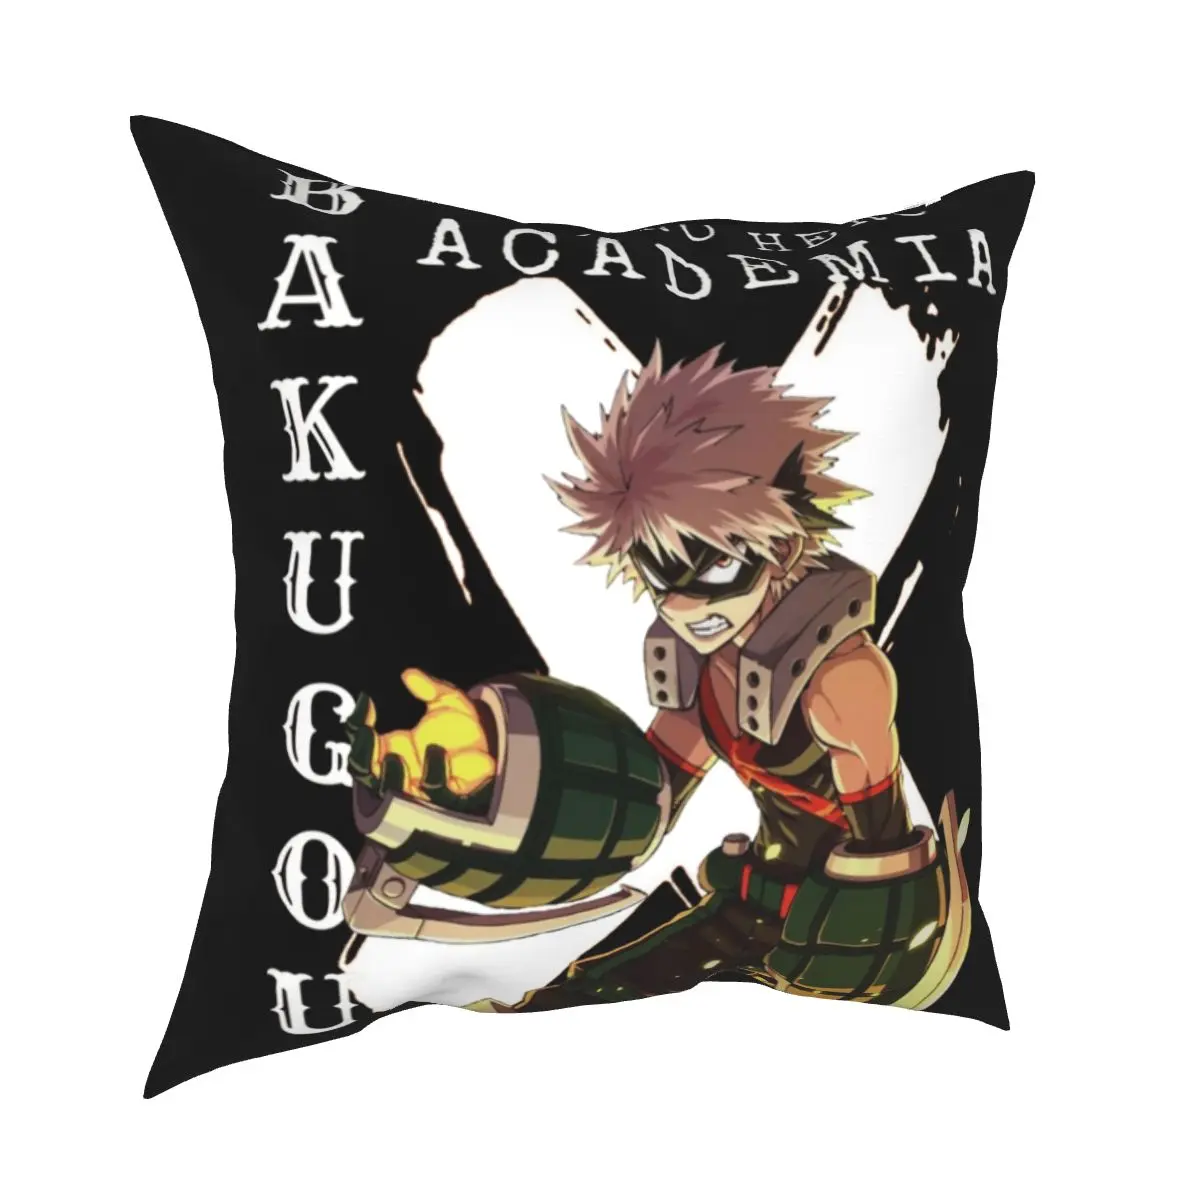 

Наволочка Boku No My Hero моя геройская Академия Katsuki наволочка для подушки декоративный Аниме Манга комикс наволочка для подушки Чехол для дома 40x40 см